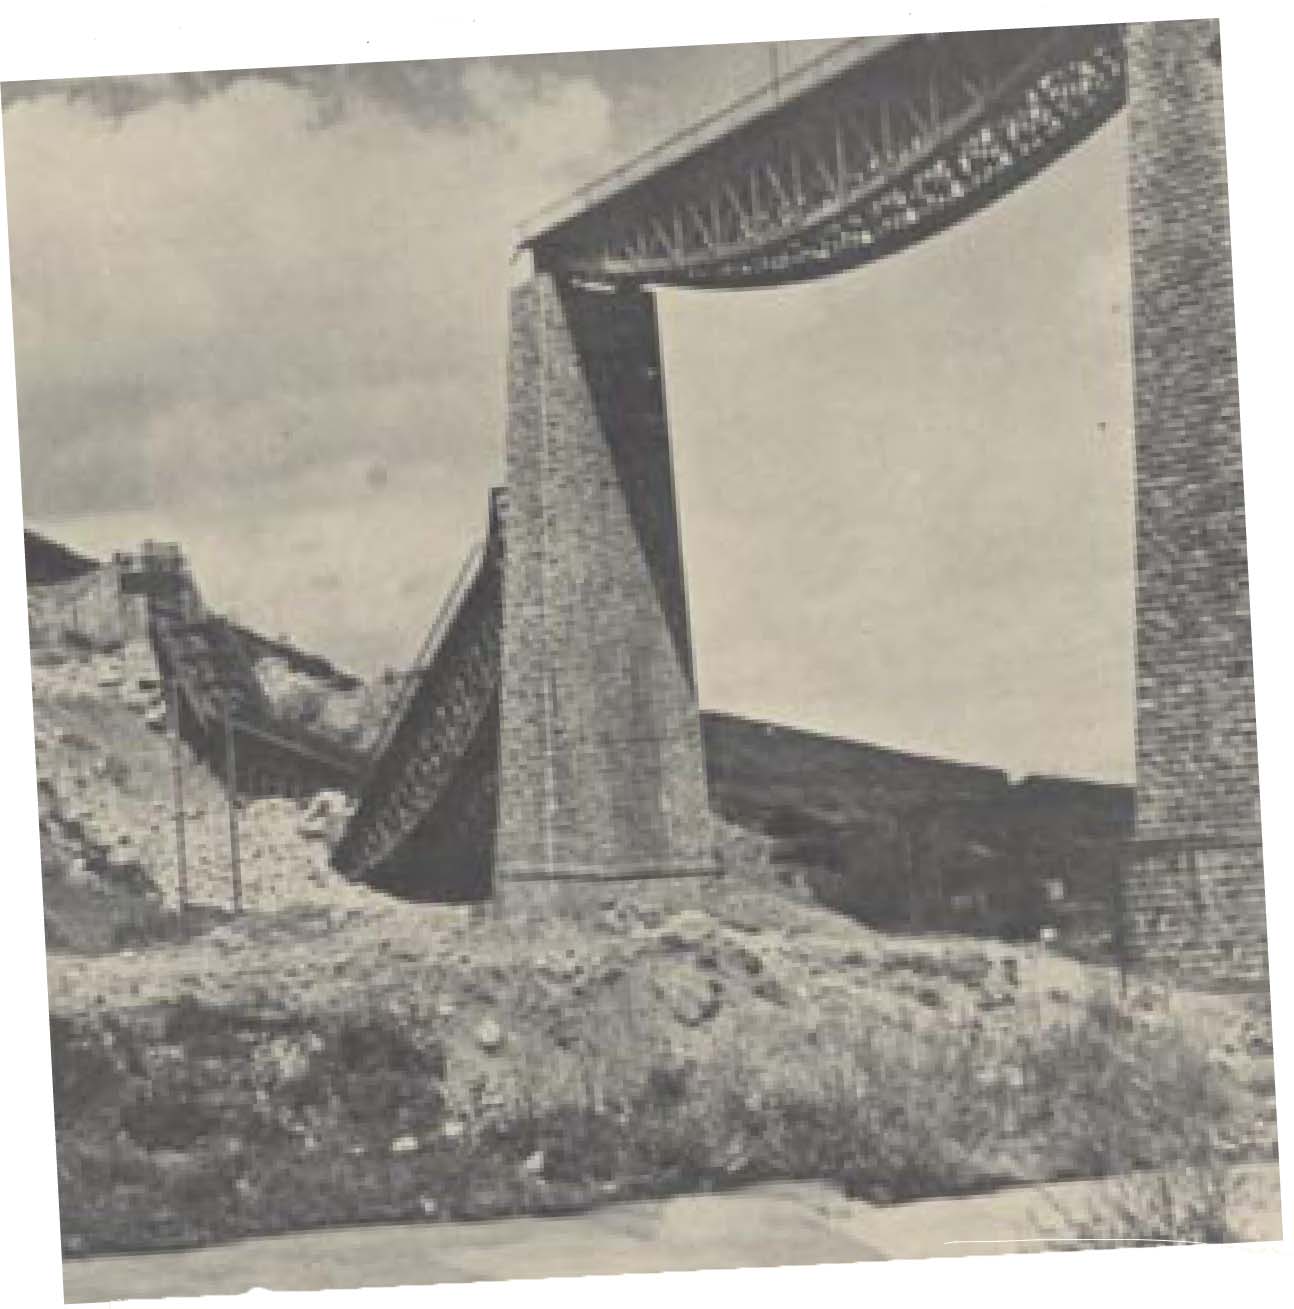 Η γέφυρα του Γοργοπόταµου µετά την ανατίναξή της, στις 25 Νοεµβρίου 1942. Θεωρείται η κορυφαία πράξη της Εθνικής Αντίστασης